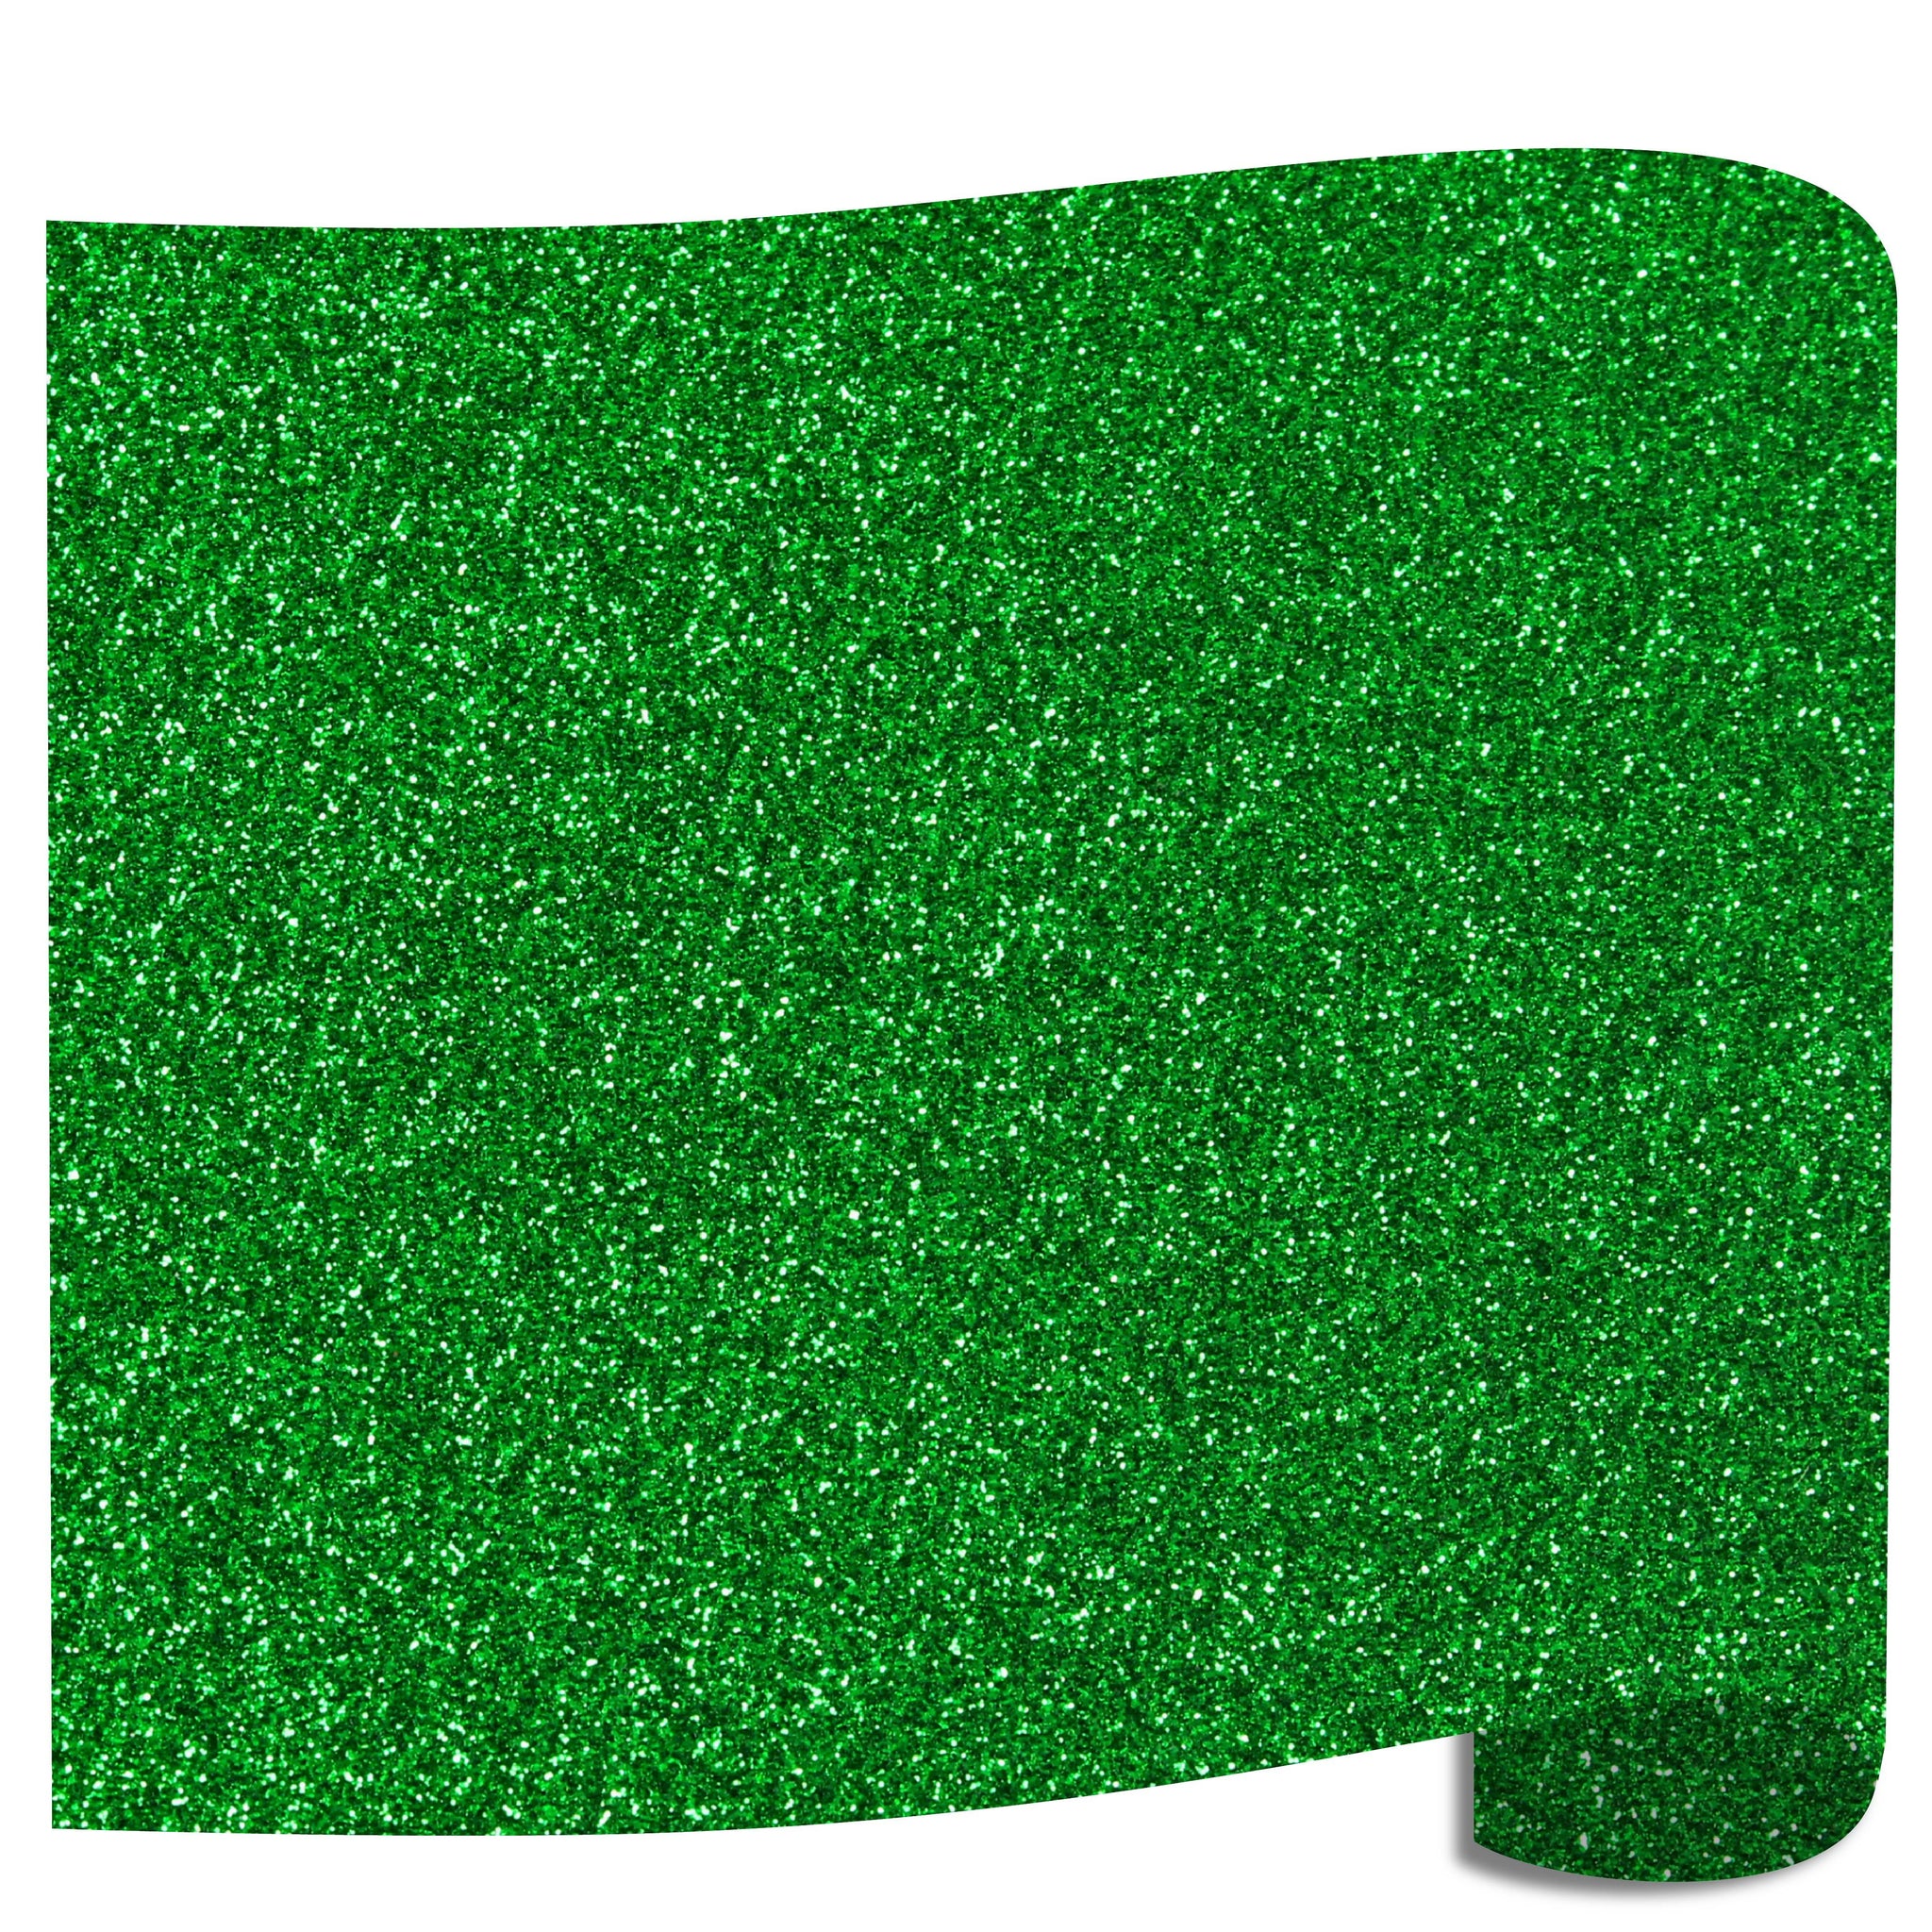 Siser Glitter Heat Transfer Vinyl (HTV) 20 x 150 ft Roll - 45 Colors Available, Green (Grass)